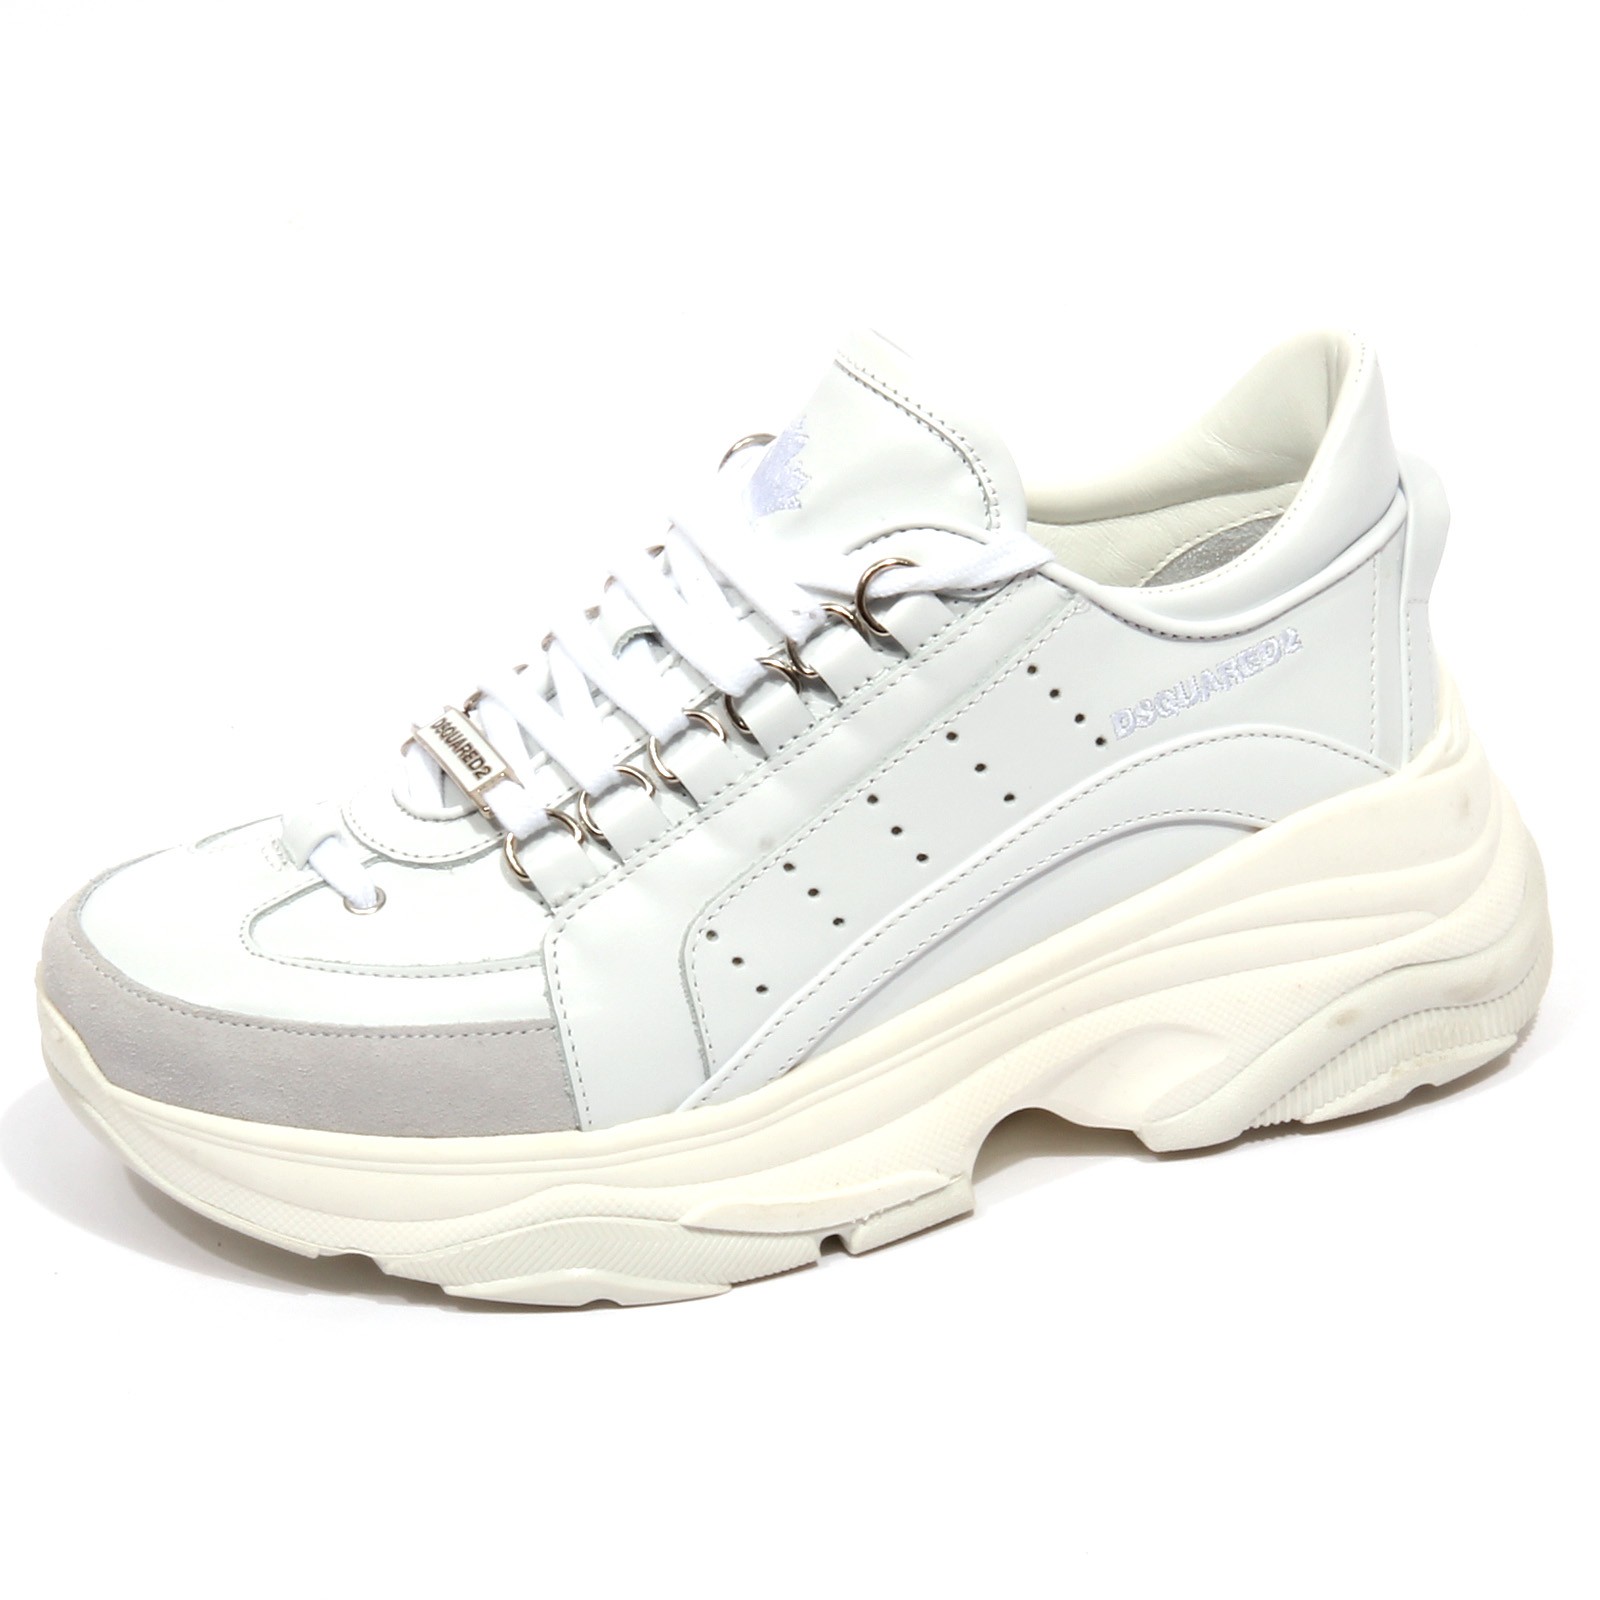 디스퀘어드2 sneaker woman off white / gray DSQUARED2 shoes